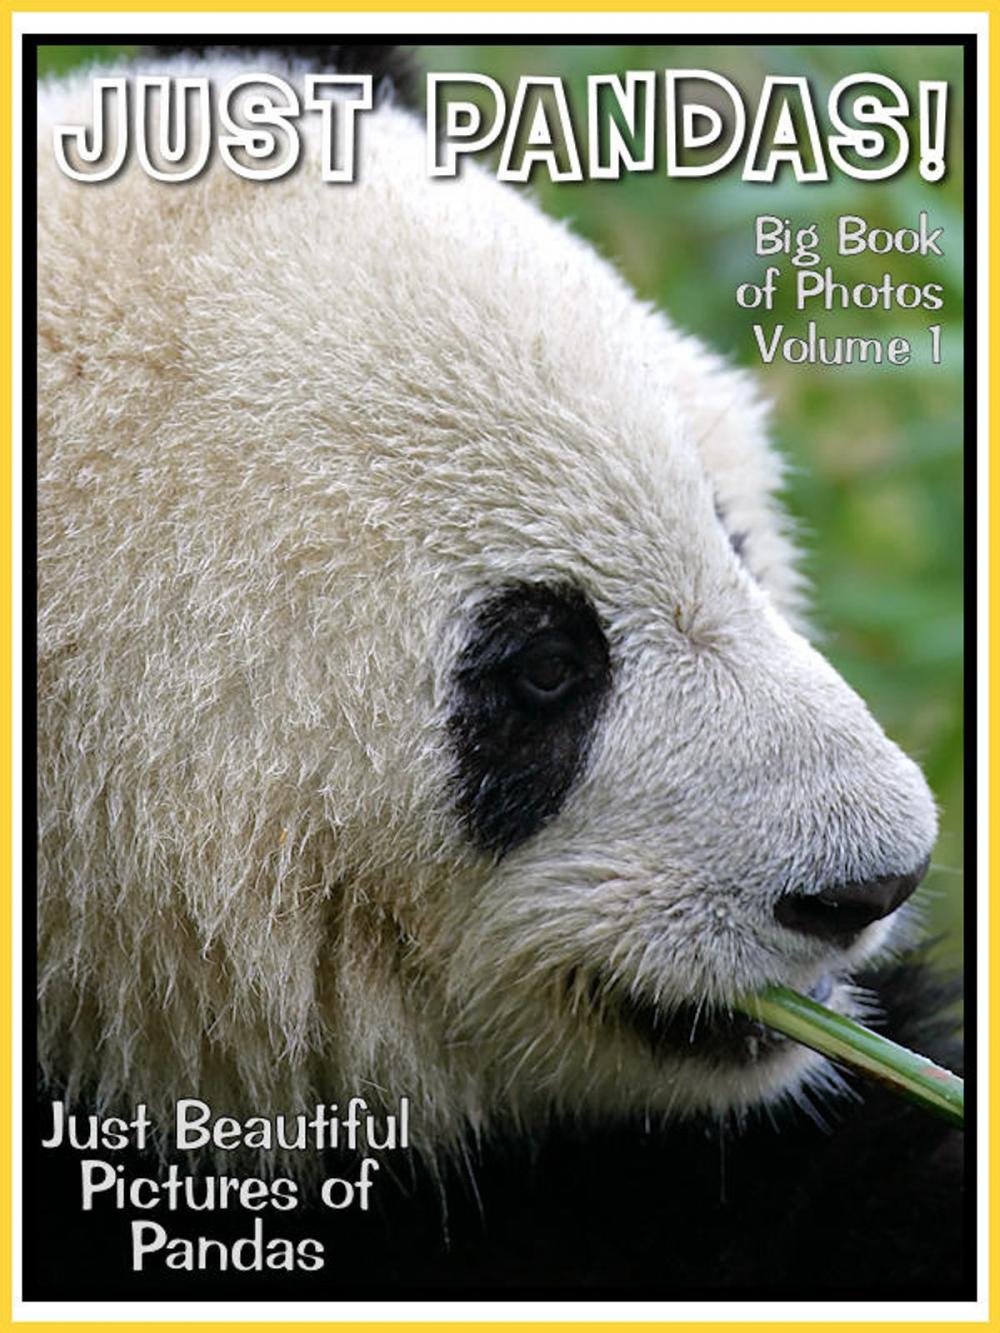 Big bigCover of Just Panda Photos! Big Book of Panda Photographs & Pictures Vol. 1